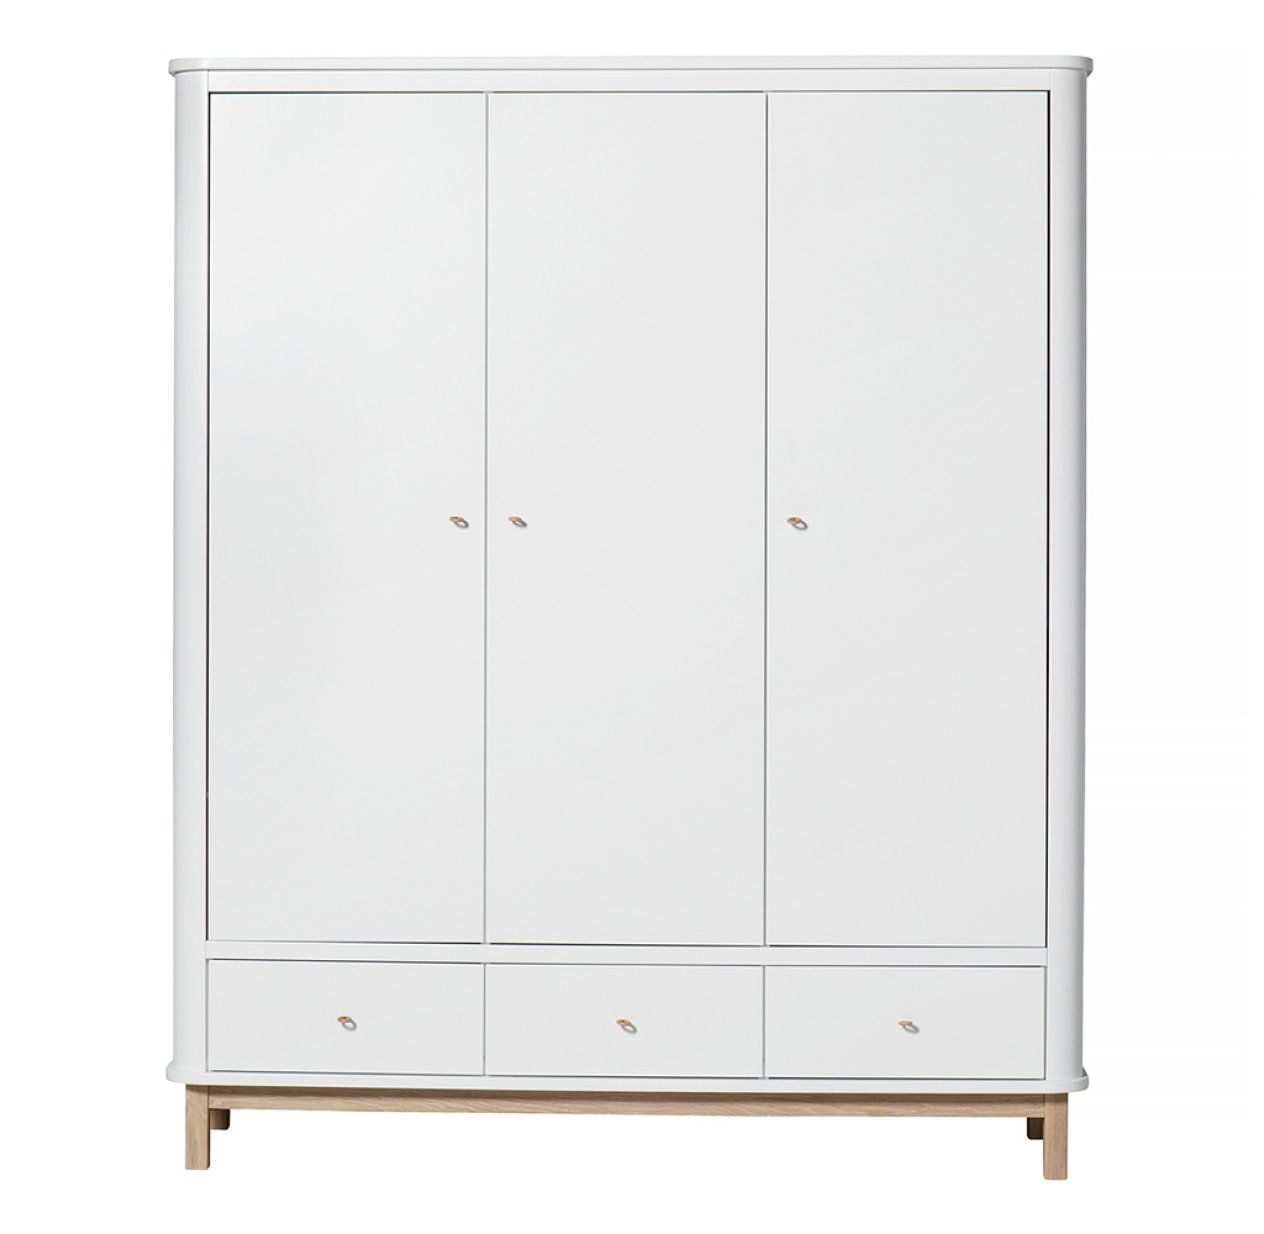 Armoire 3 portes Wood - Chêne / Blanc Oliver Furniture pour chambre enfant  - Les Enfants du Design